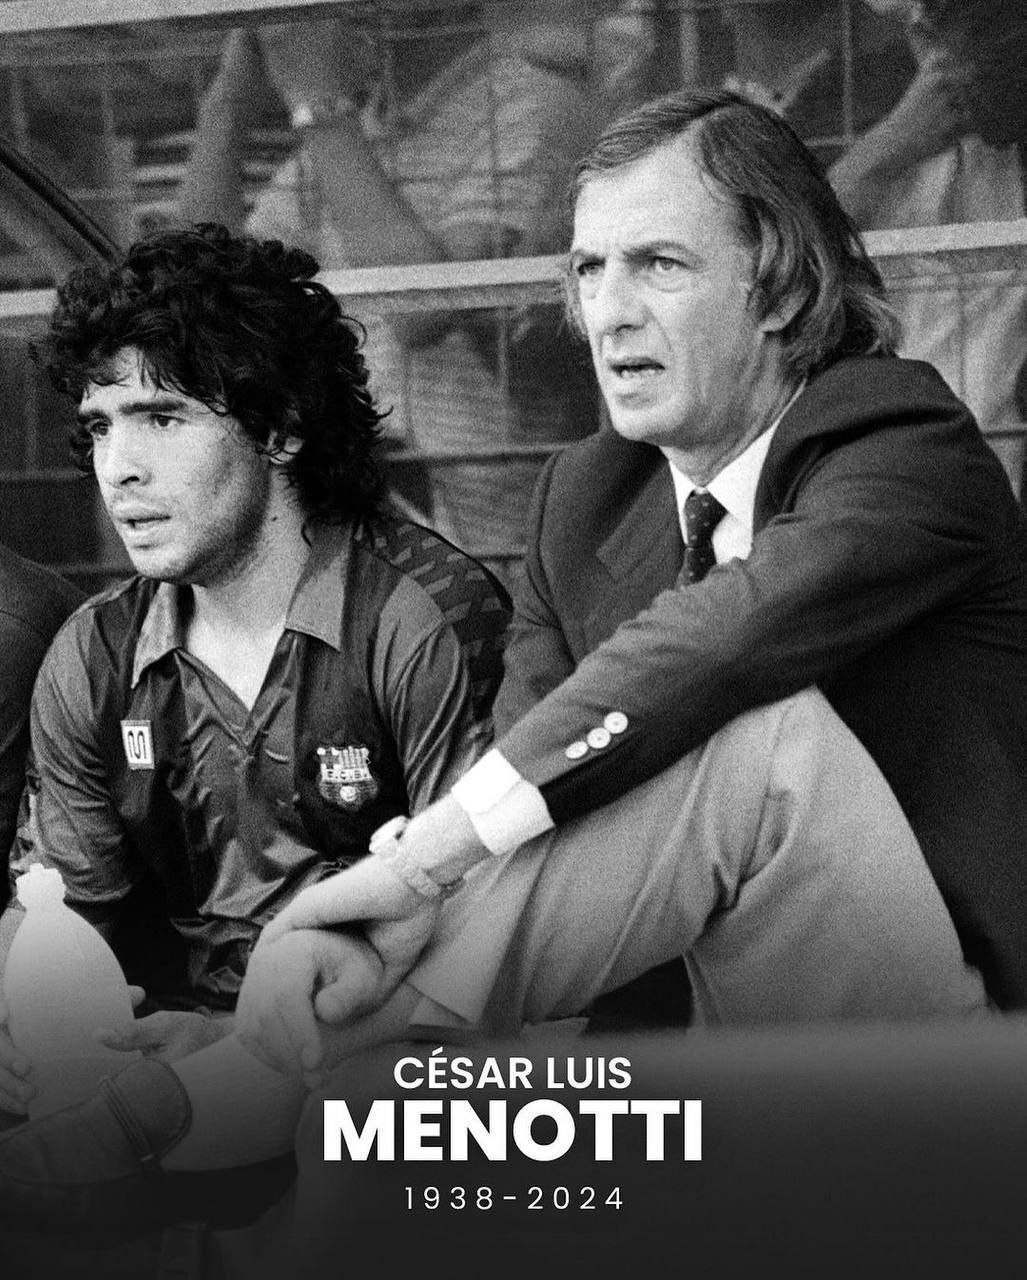 سزار لوئیس منوتی، اسطوره فوتبال آرژانتین، در سن 85 سالگی درگذشت